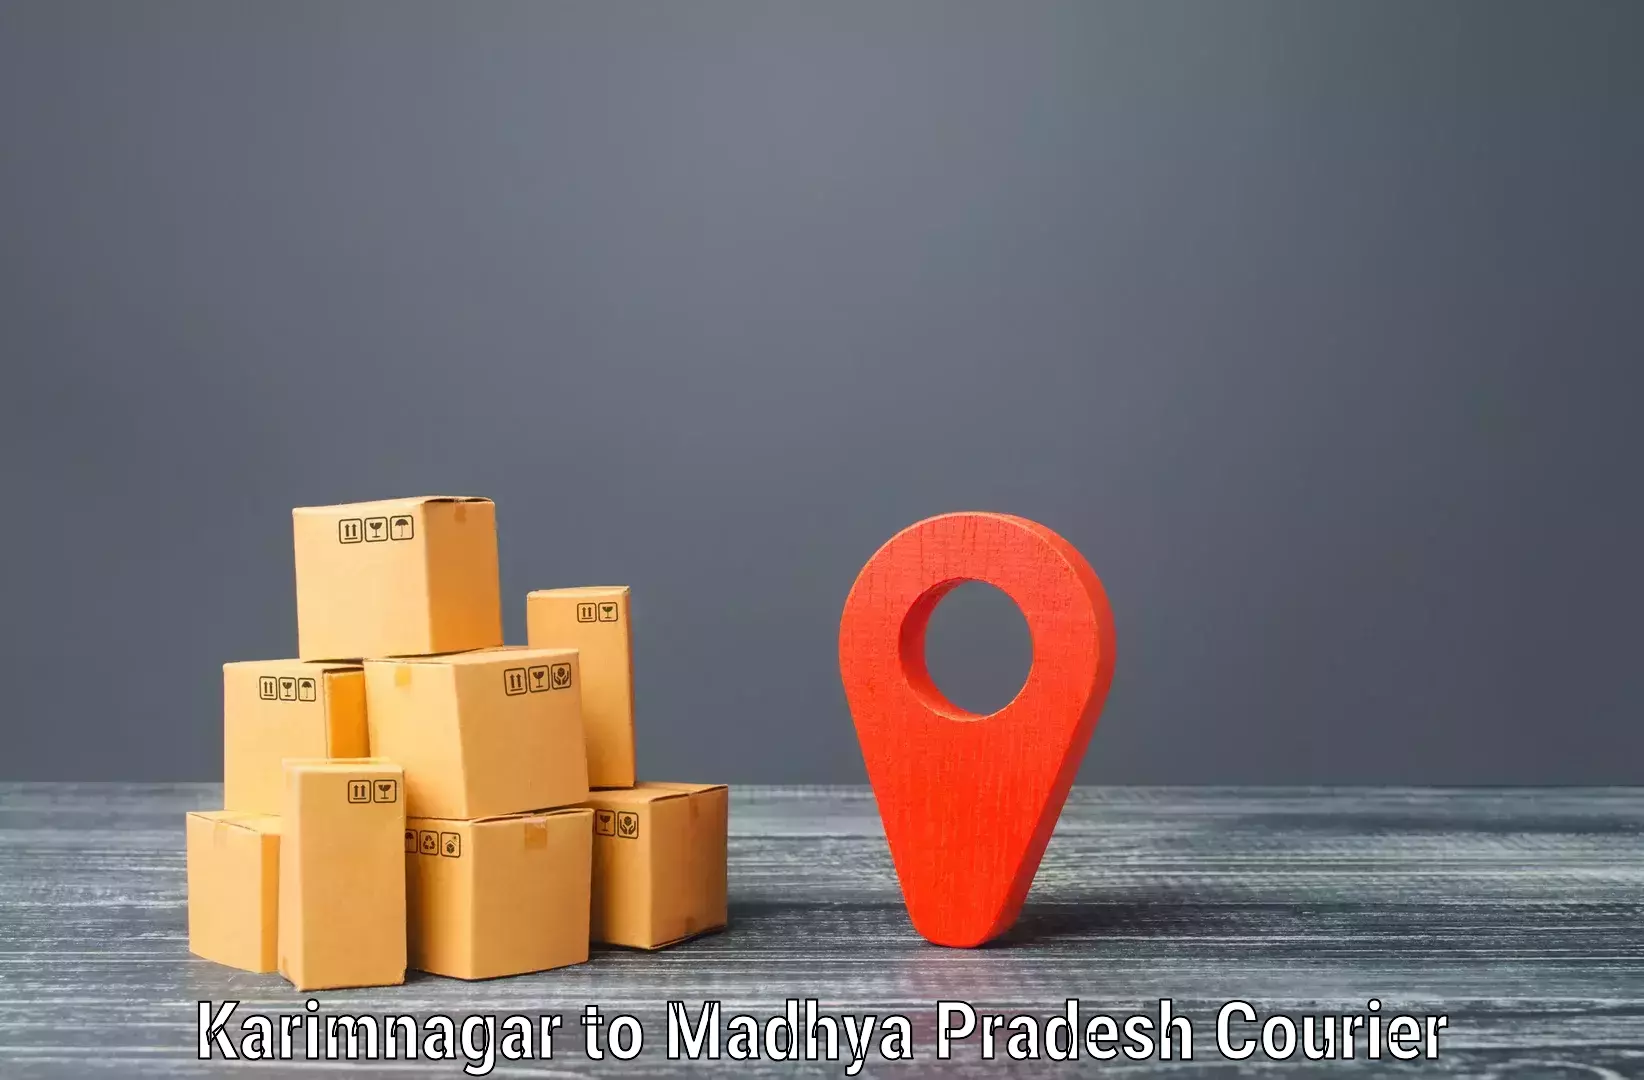 Efficient parcel service Karimnagar to Ghugri